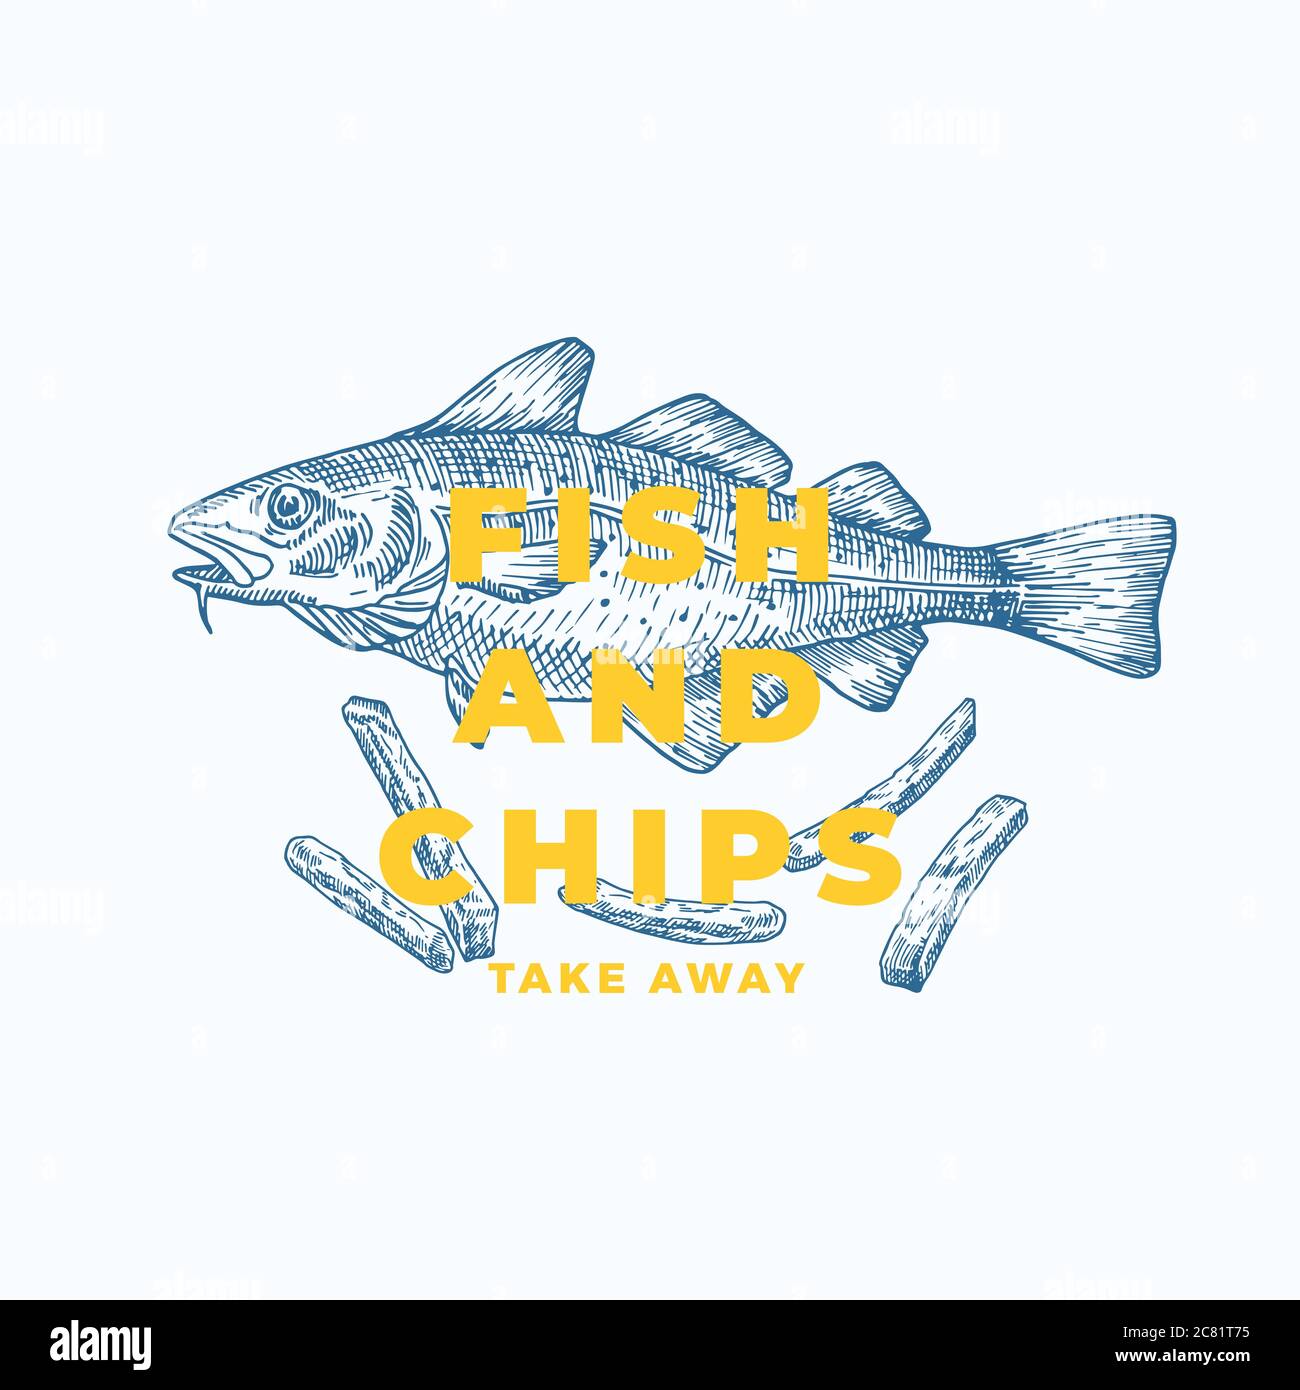 Fisch und Chips Abstraktes Vektorzeichen, Symbol oder Logo-Vorlage. Handgezeichnete Kabeljau-Fische und Kartoffelfrites mit moderner Typografie. Vektor In Premium-Qualität Stock Vektor